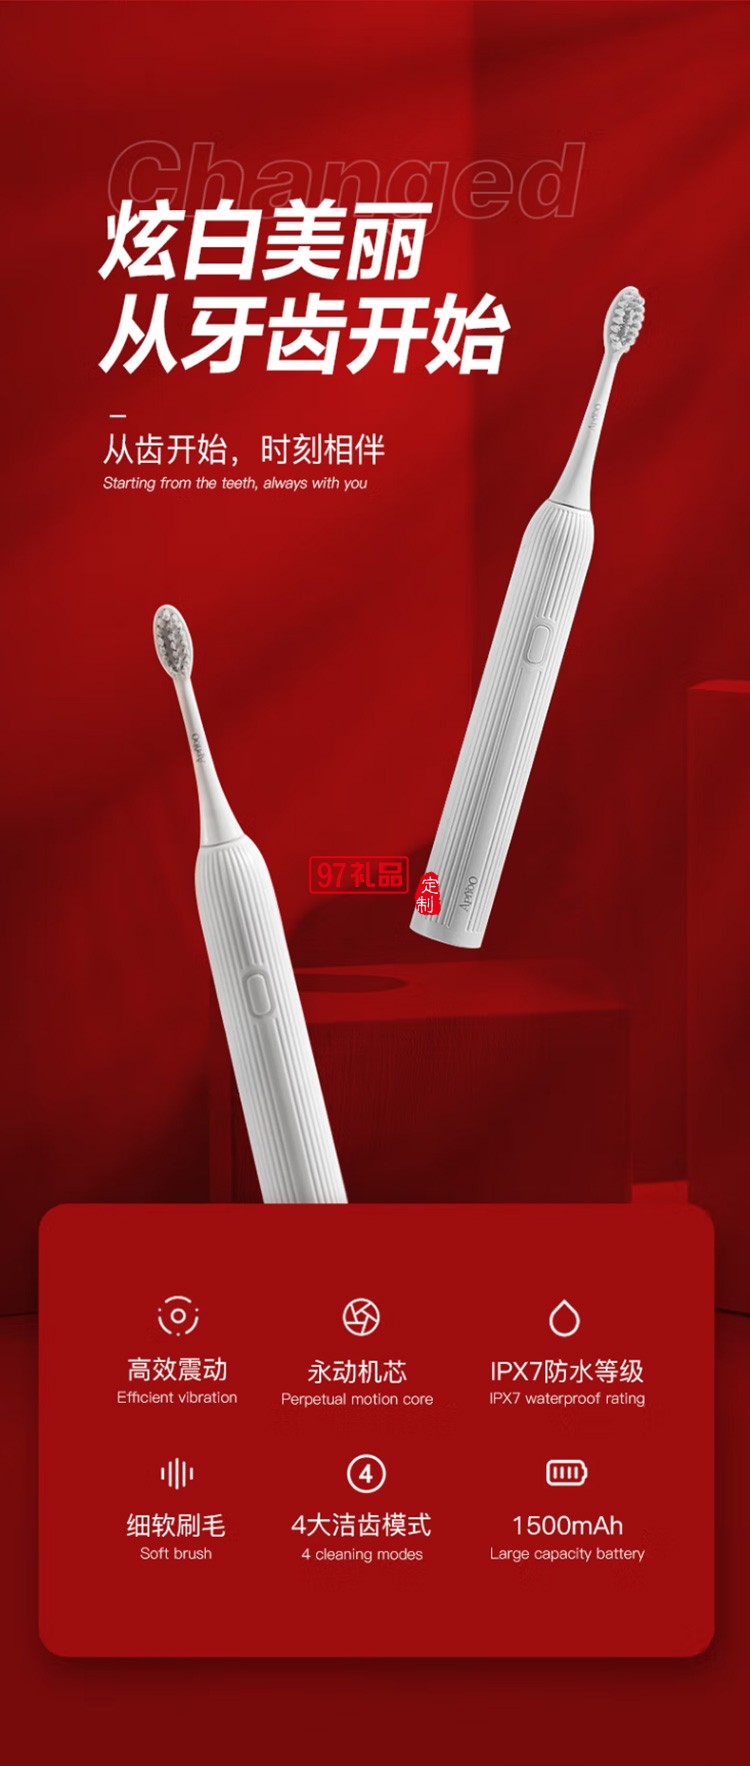 艾优（Apiyoo）电动牙刷 吹风机礼盒套装 PW-2定制公司广告礼品